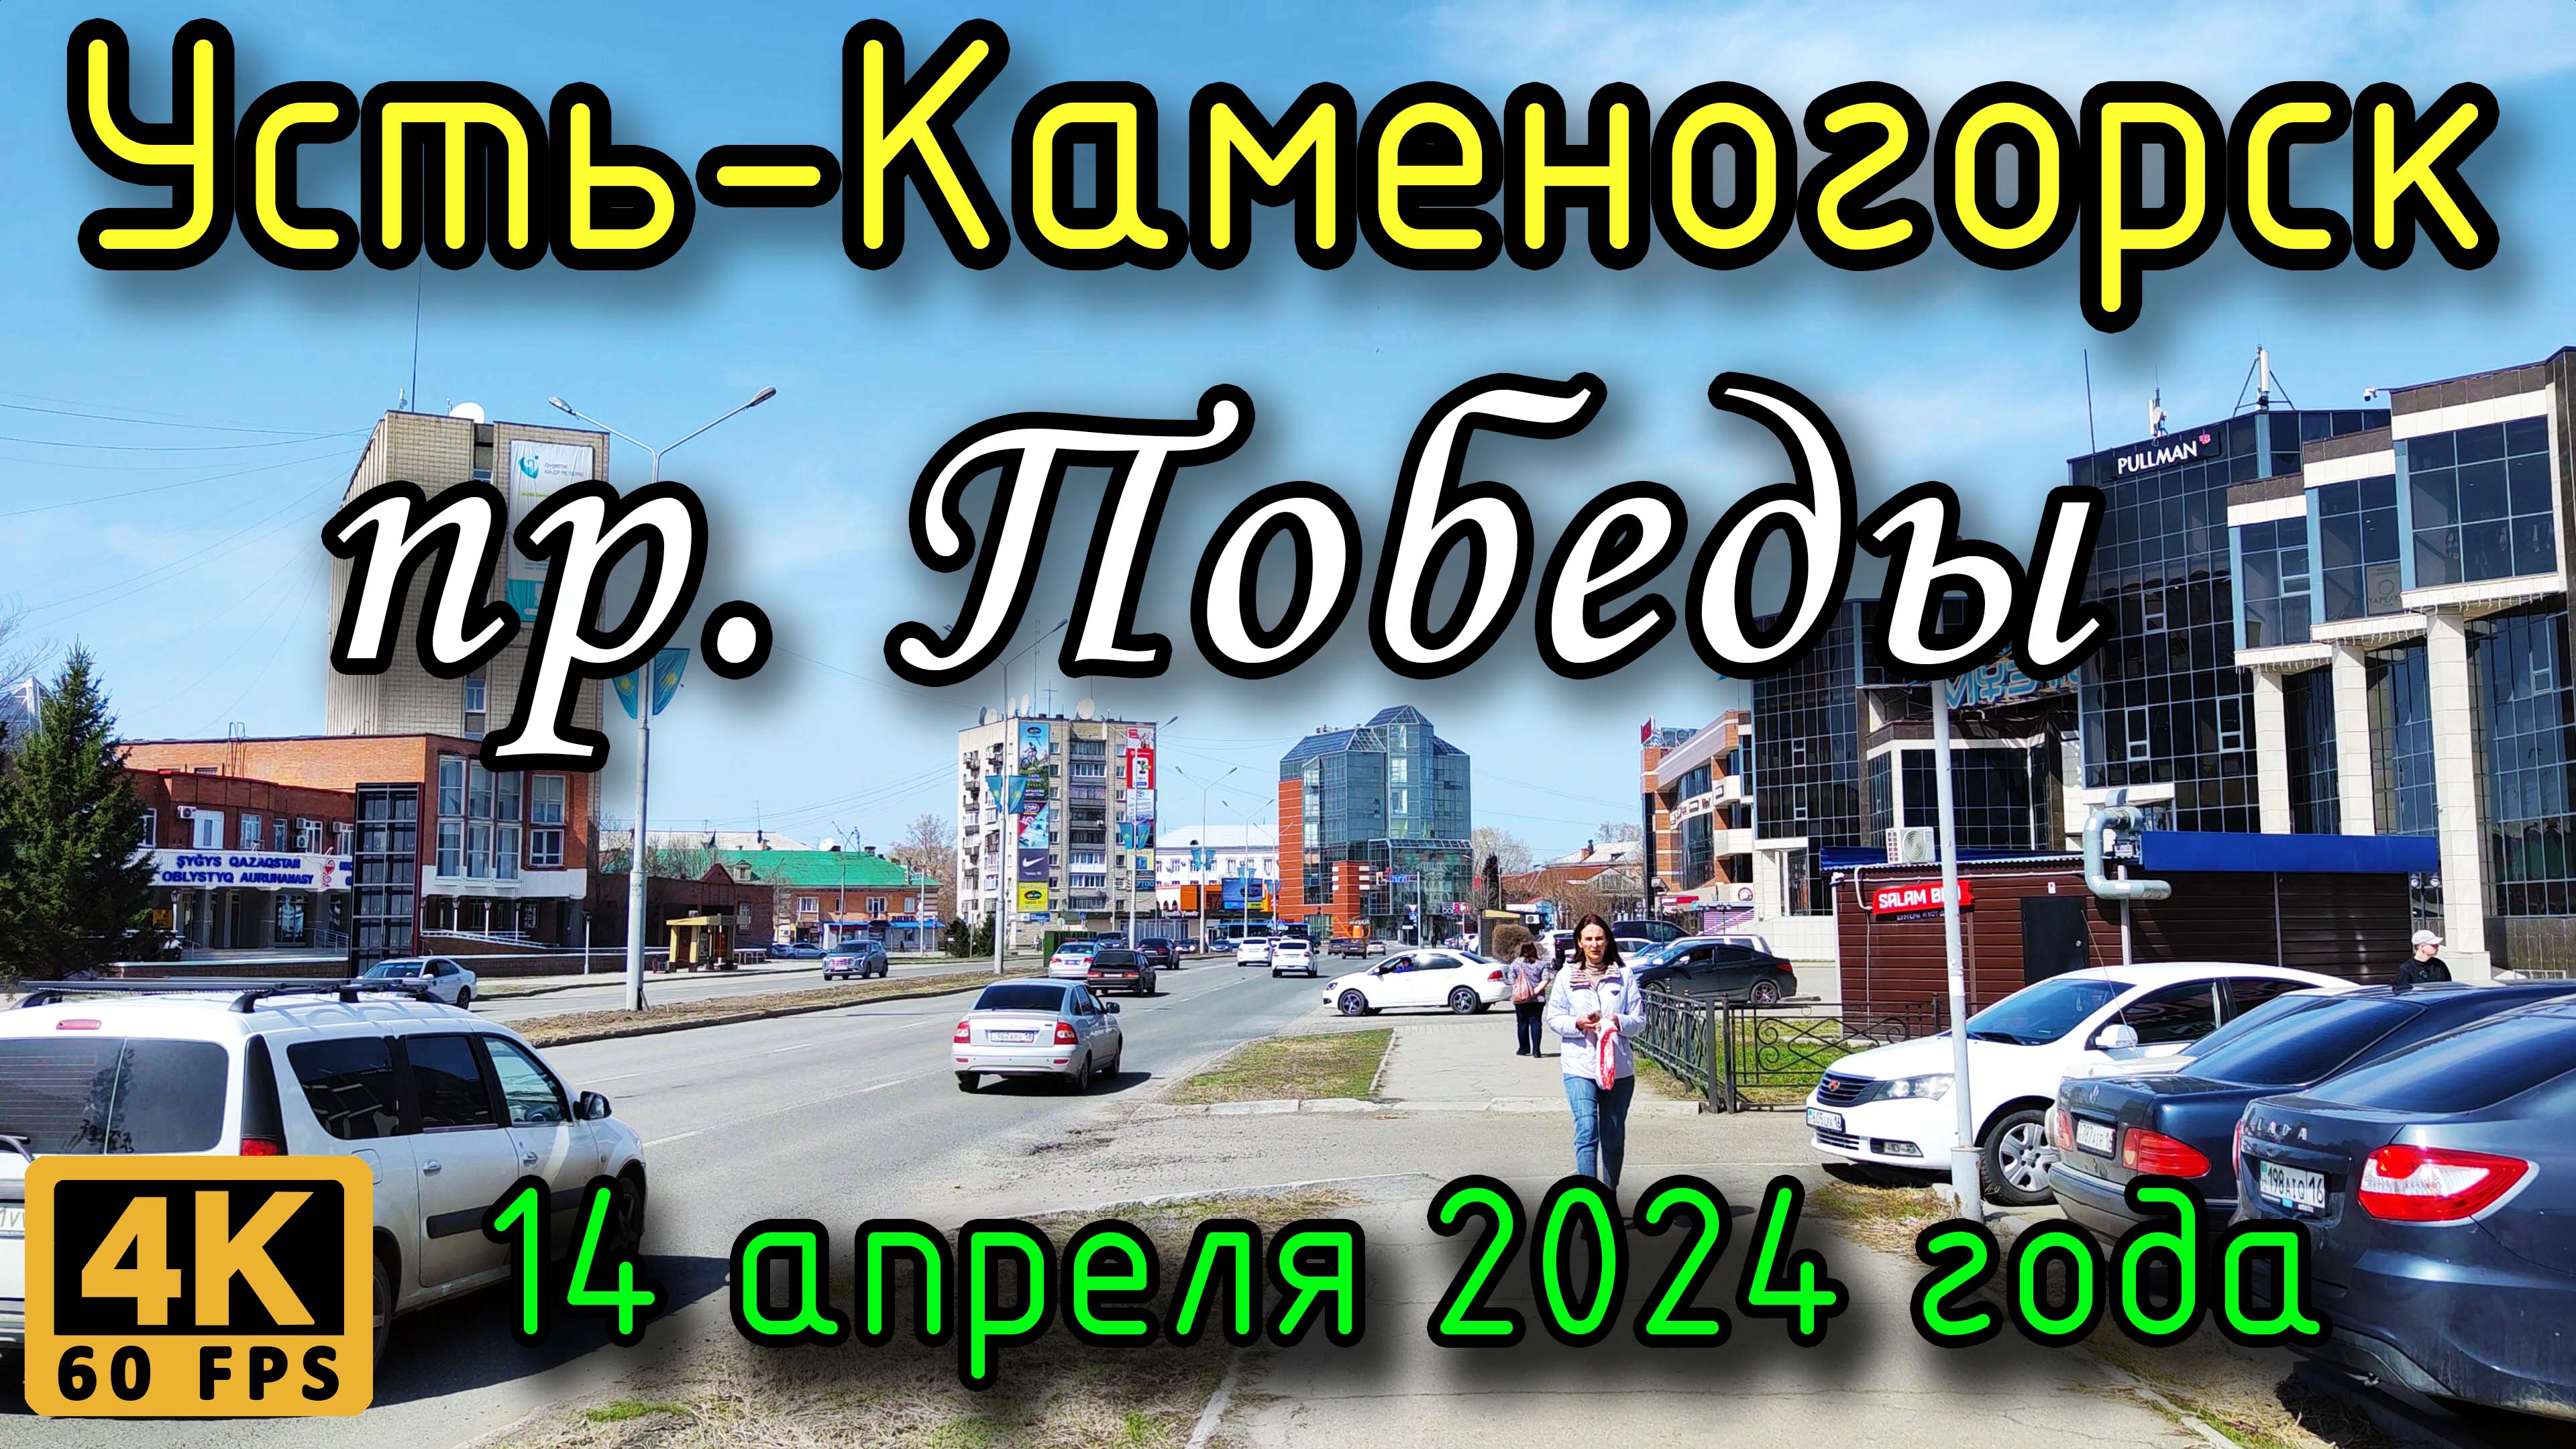 Усть-Каменогорск: пр. Победы в 4К, 14 апреля 2024 года.